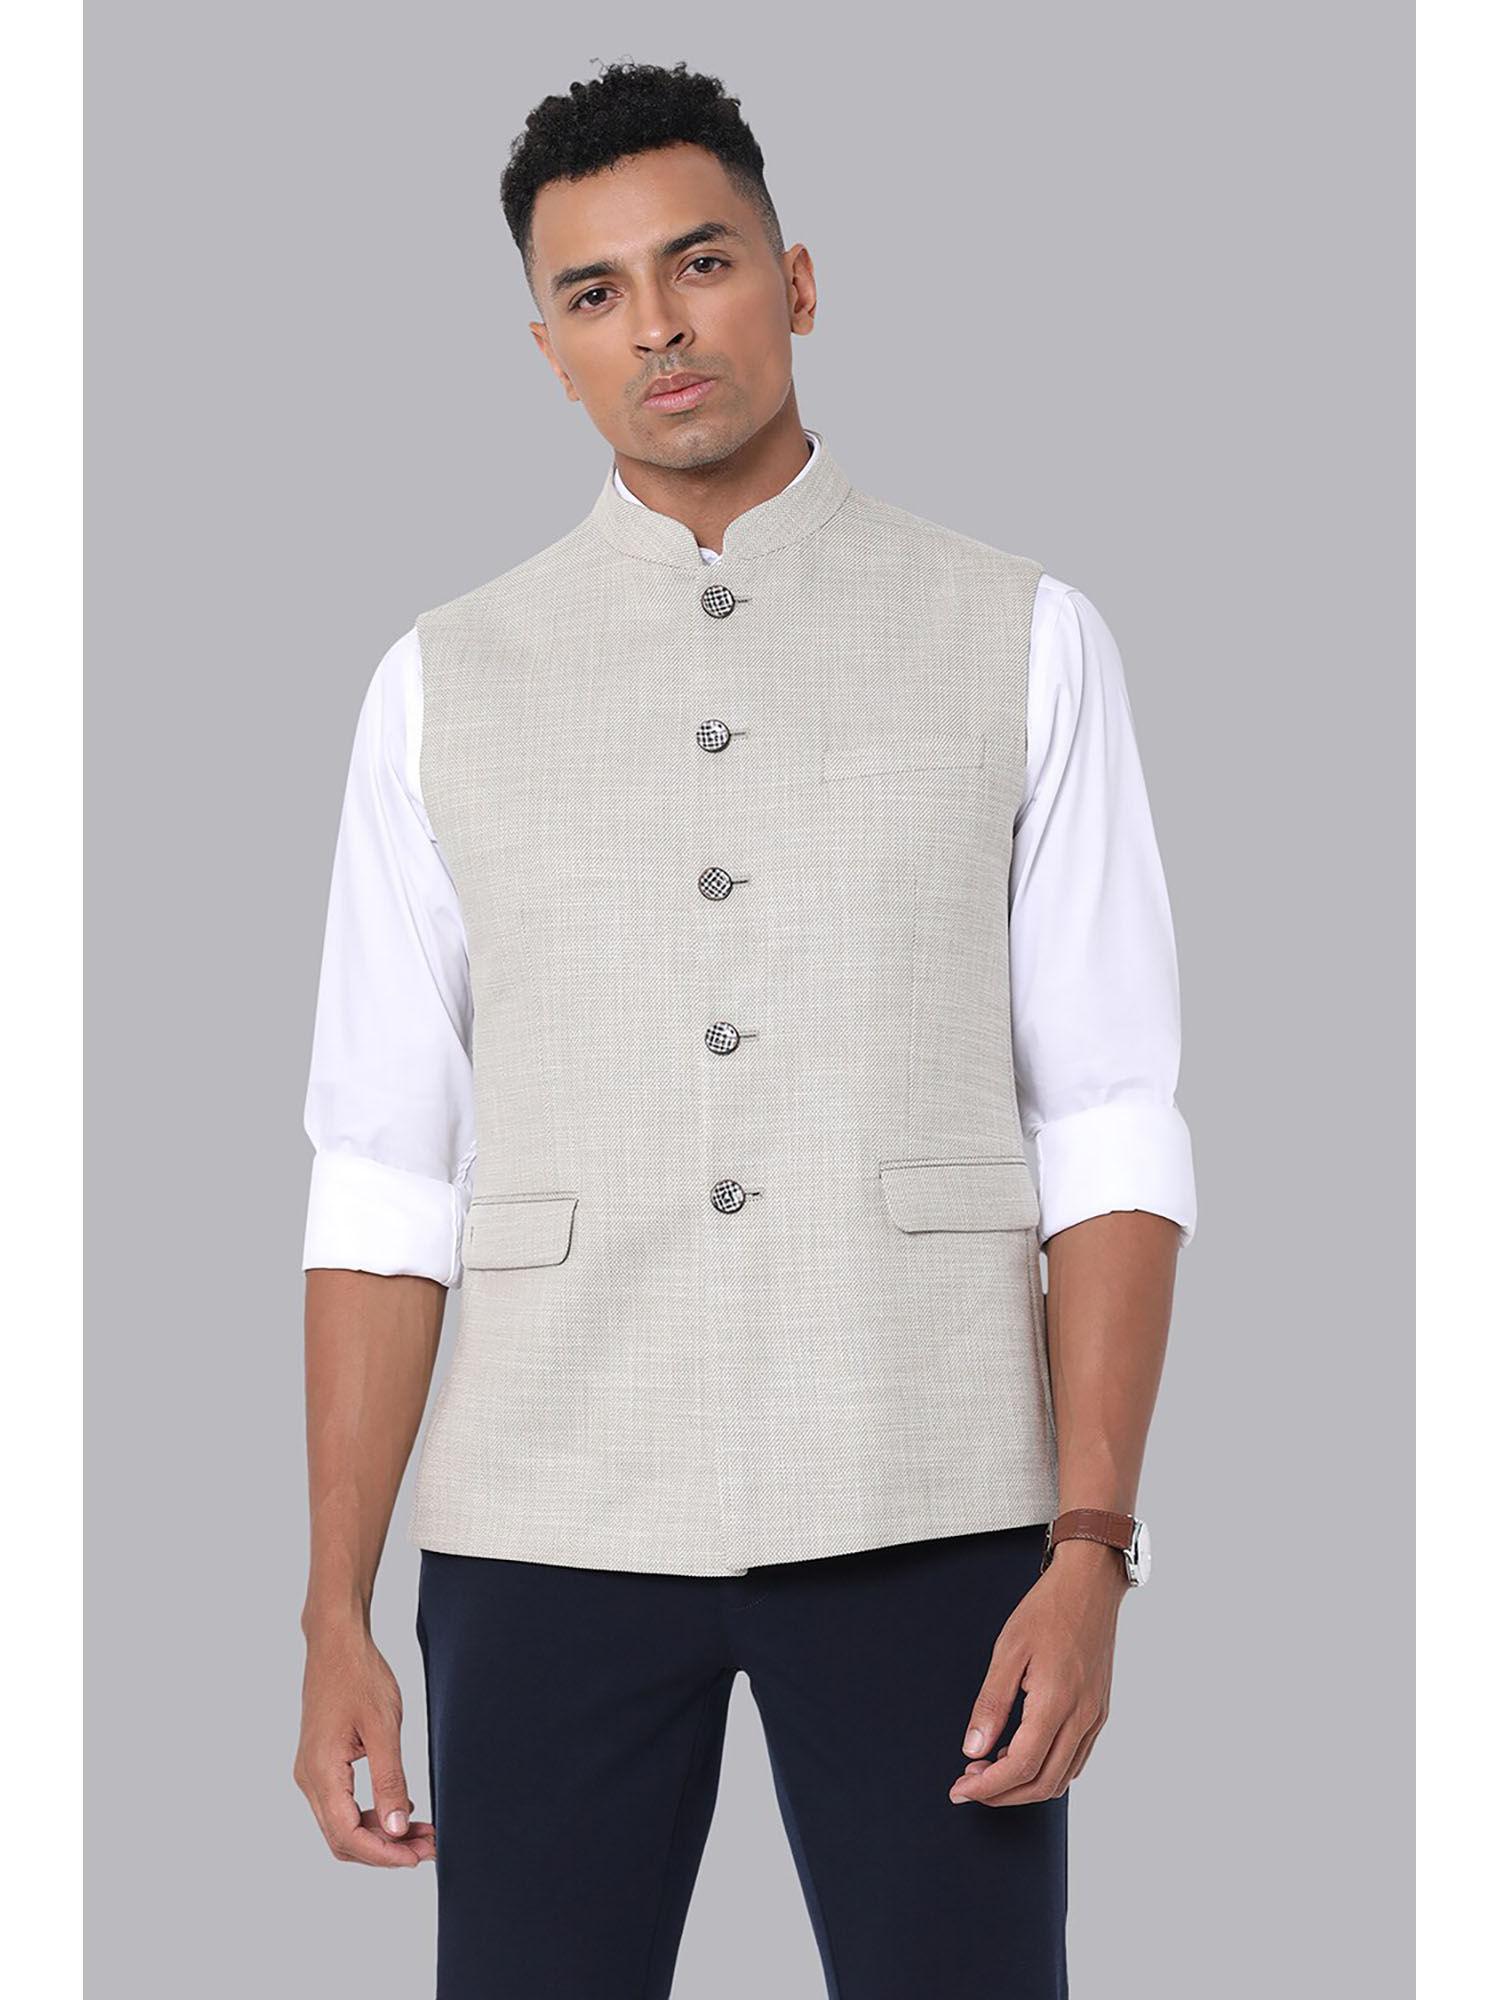 mens-grey-print-slim-fit-formal-nehru-jacket